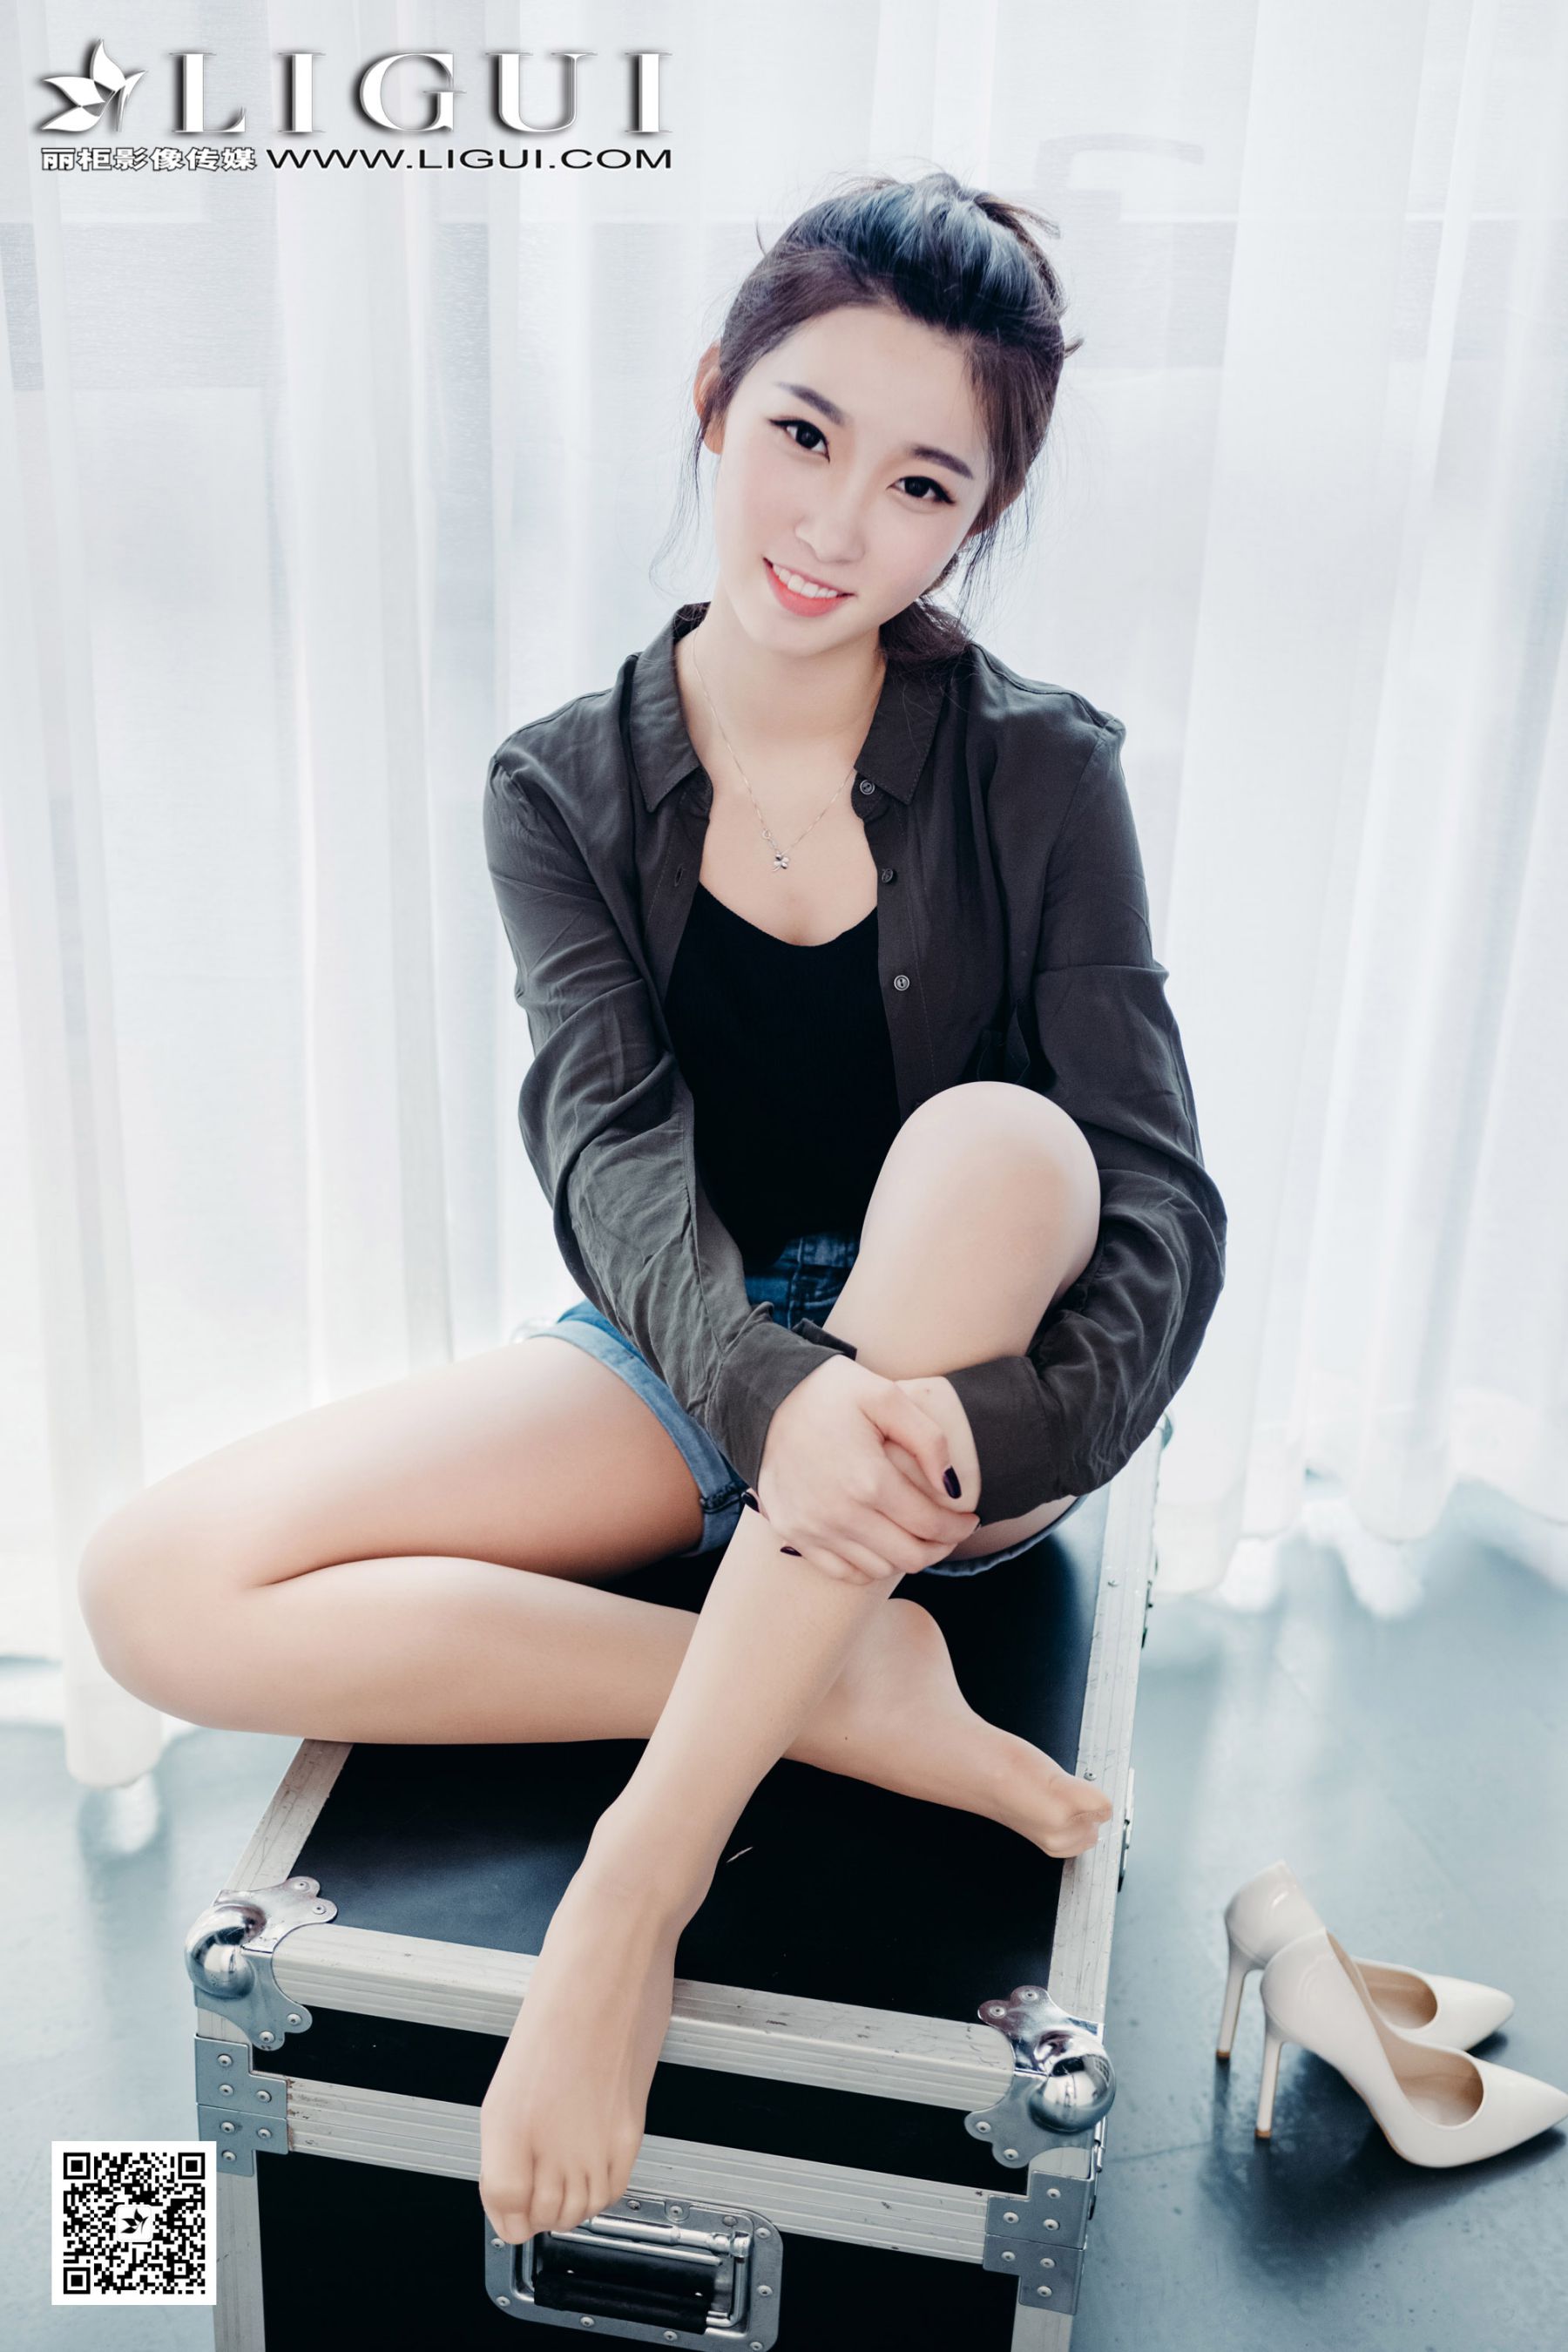 Model Xiao Xiao "Sweet Girl in Hot Pants" [Li Cabinet] Page 3 No.1554e6